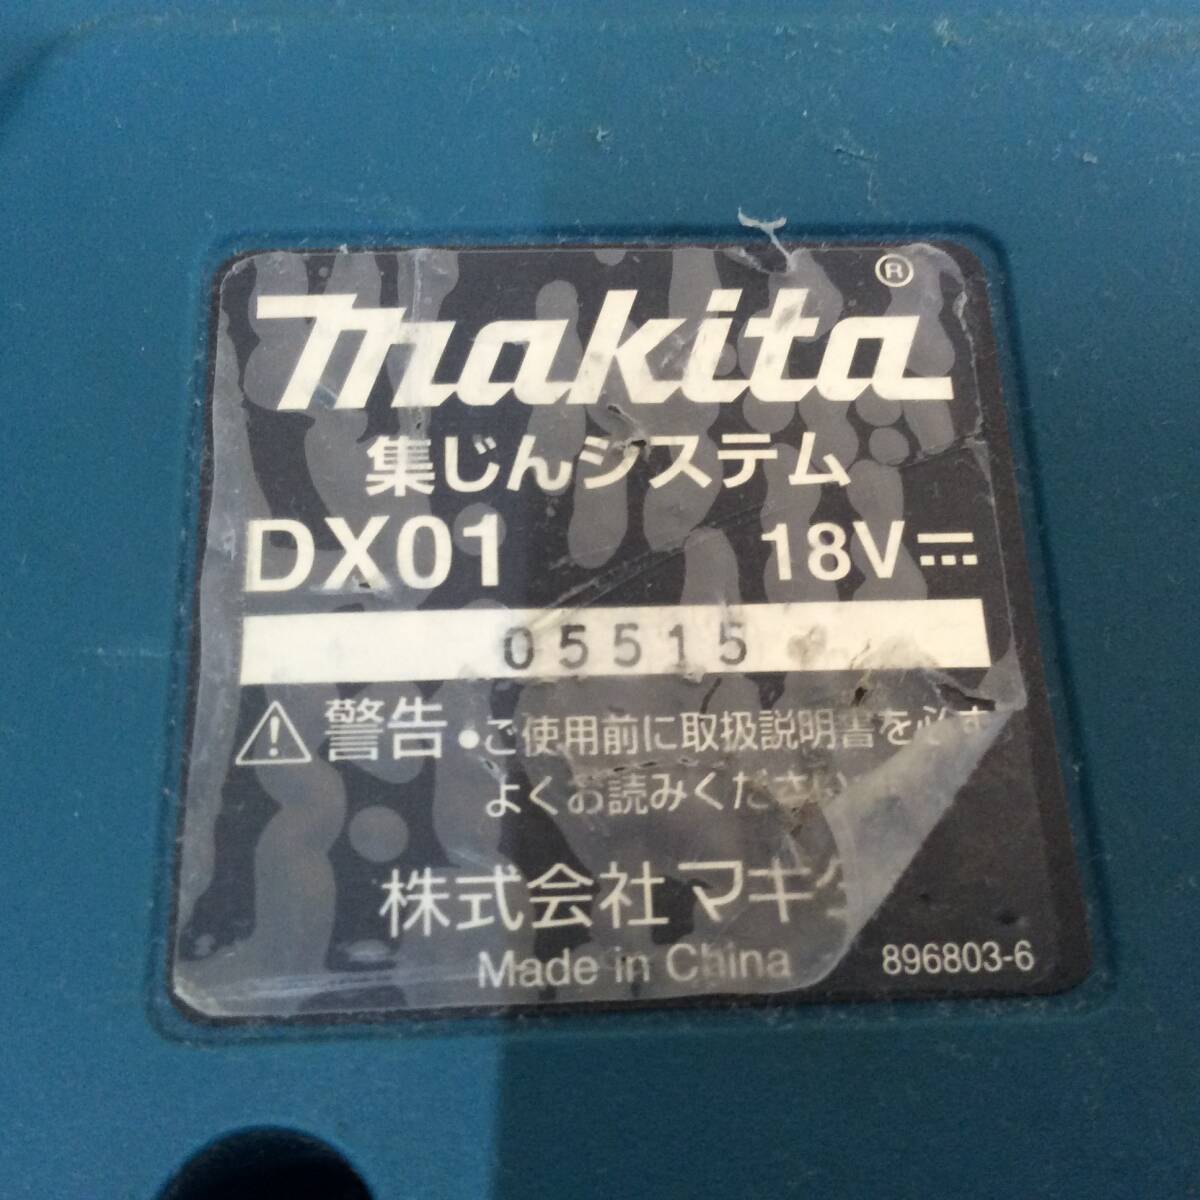 【TH-2150】中古品 makita マキタ 充電式ハンマドリル HR244D+集じんシステムDX01 純正バッテリーBL1860B×2個 充電器付の画像6